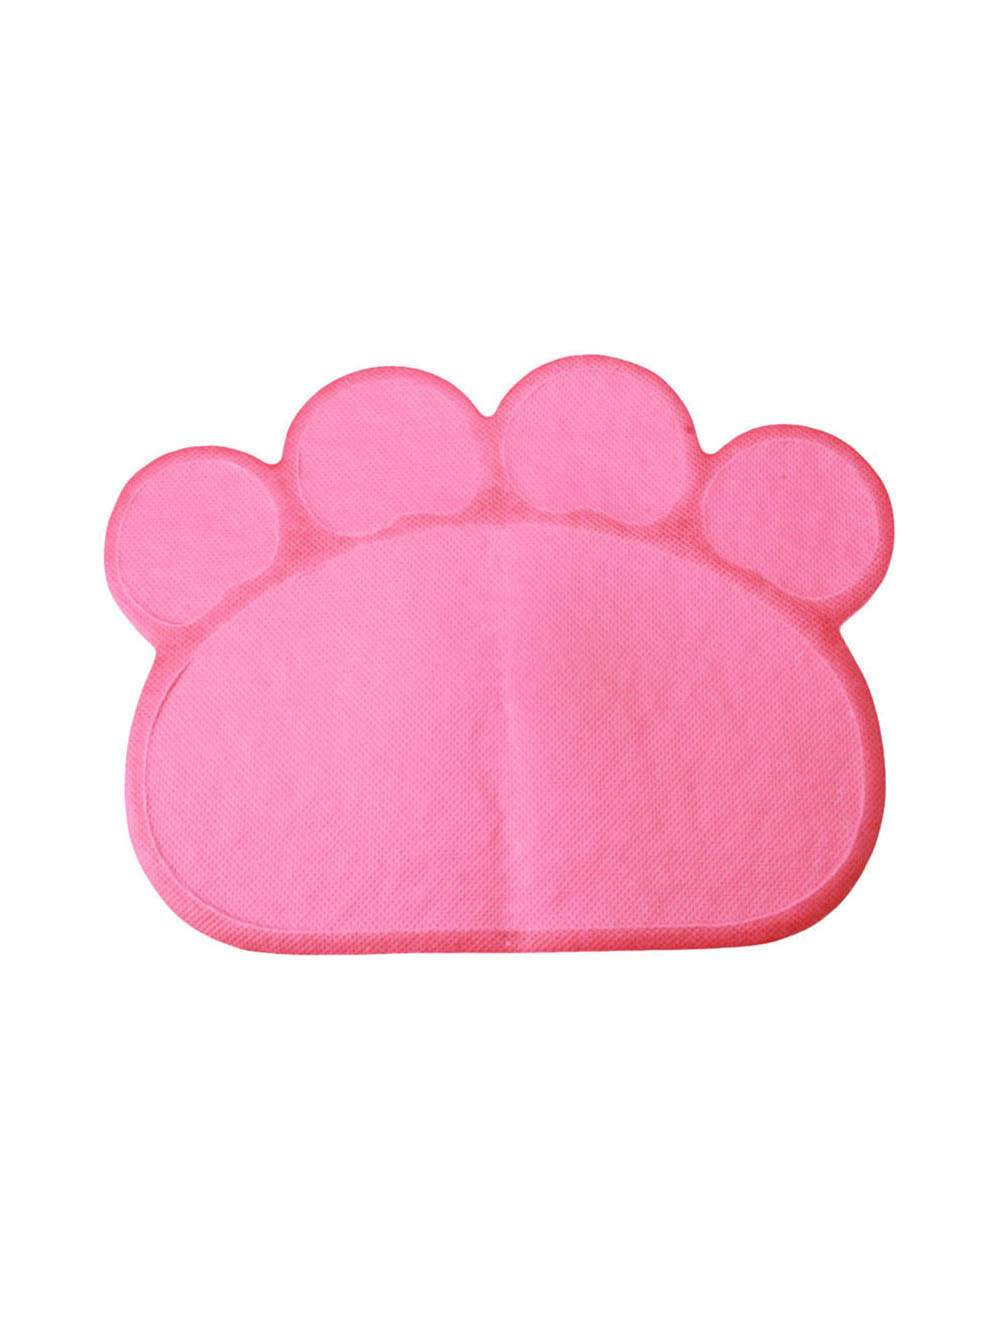 Коврик Pets & Friends PF-CLM-01 для кошачьего туалета, для еды животных, розовый